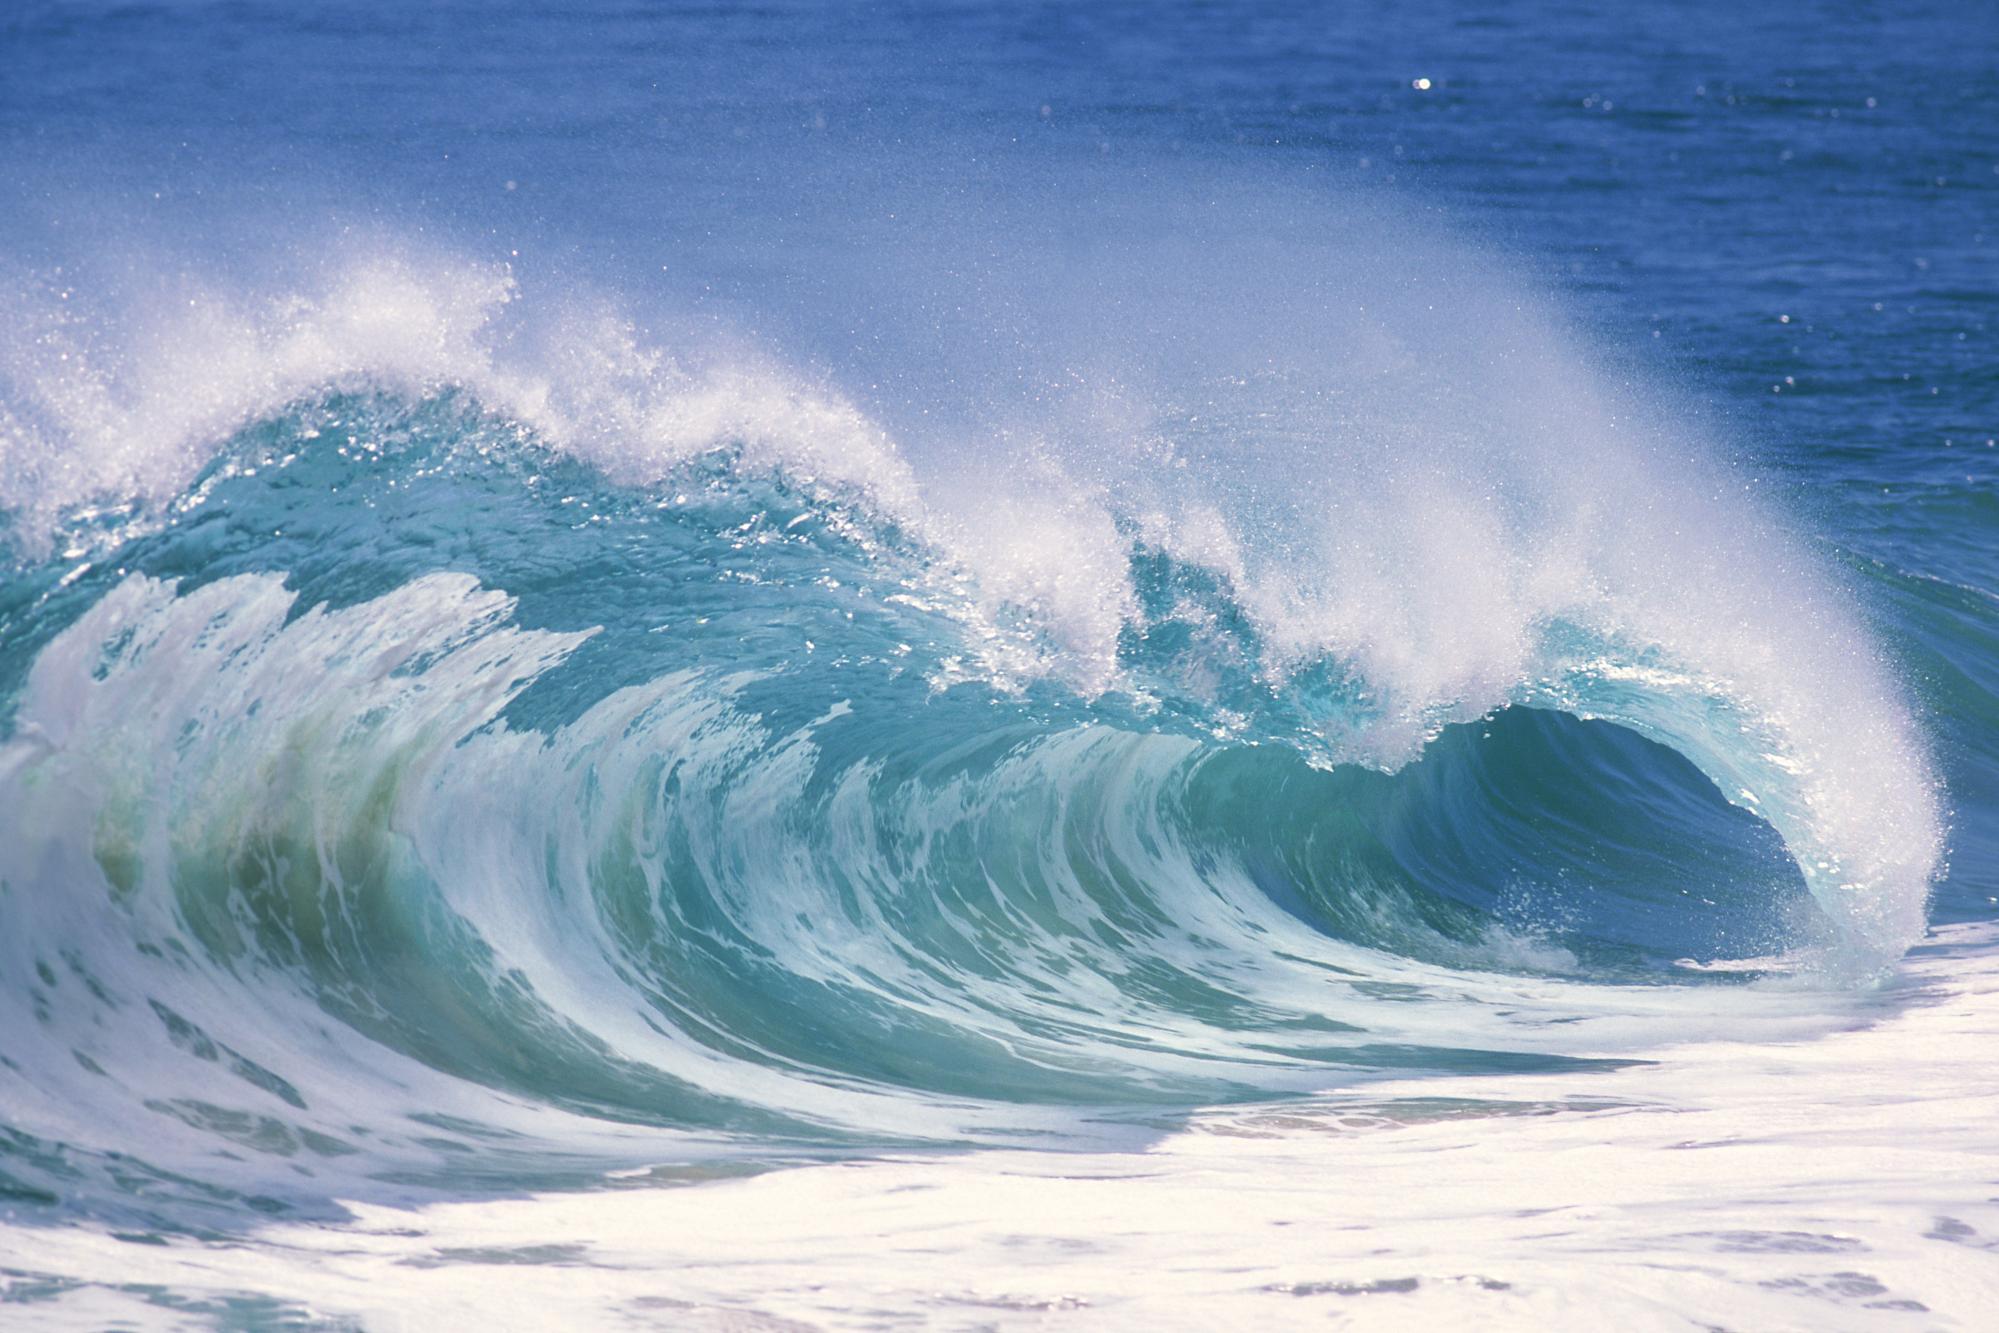 Ocean Waves Wallpaper Desktop Image Pictures Becuo